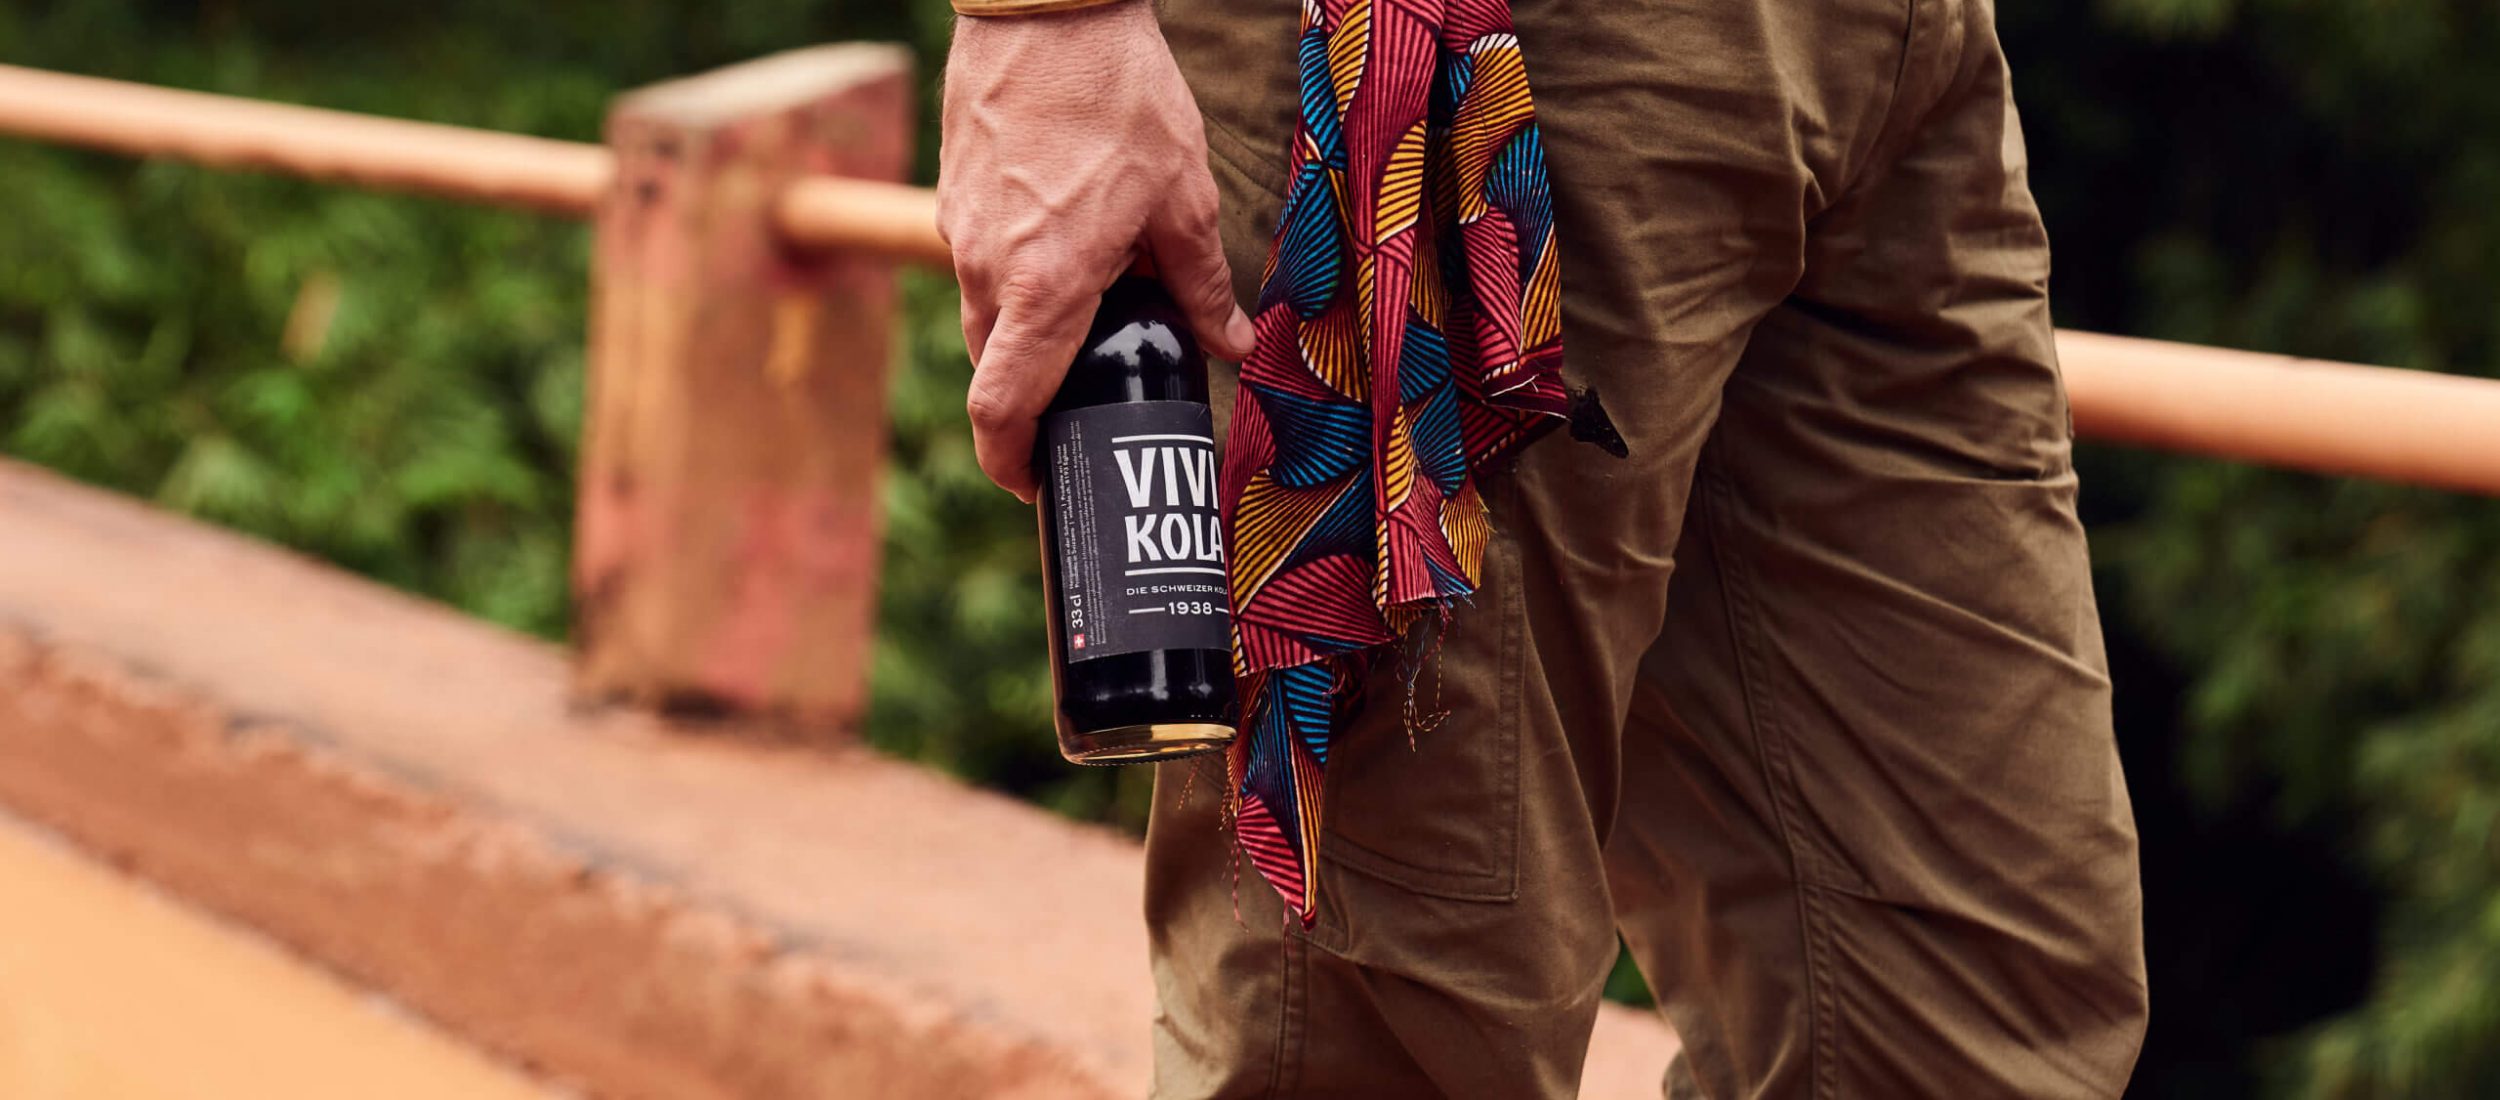 Vivi Kola bottle in Cameroon